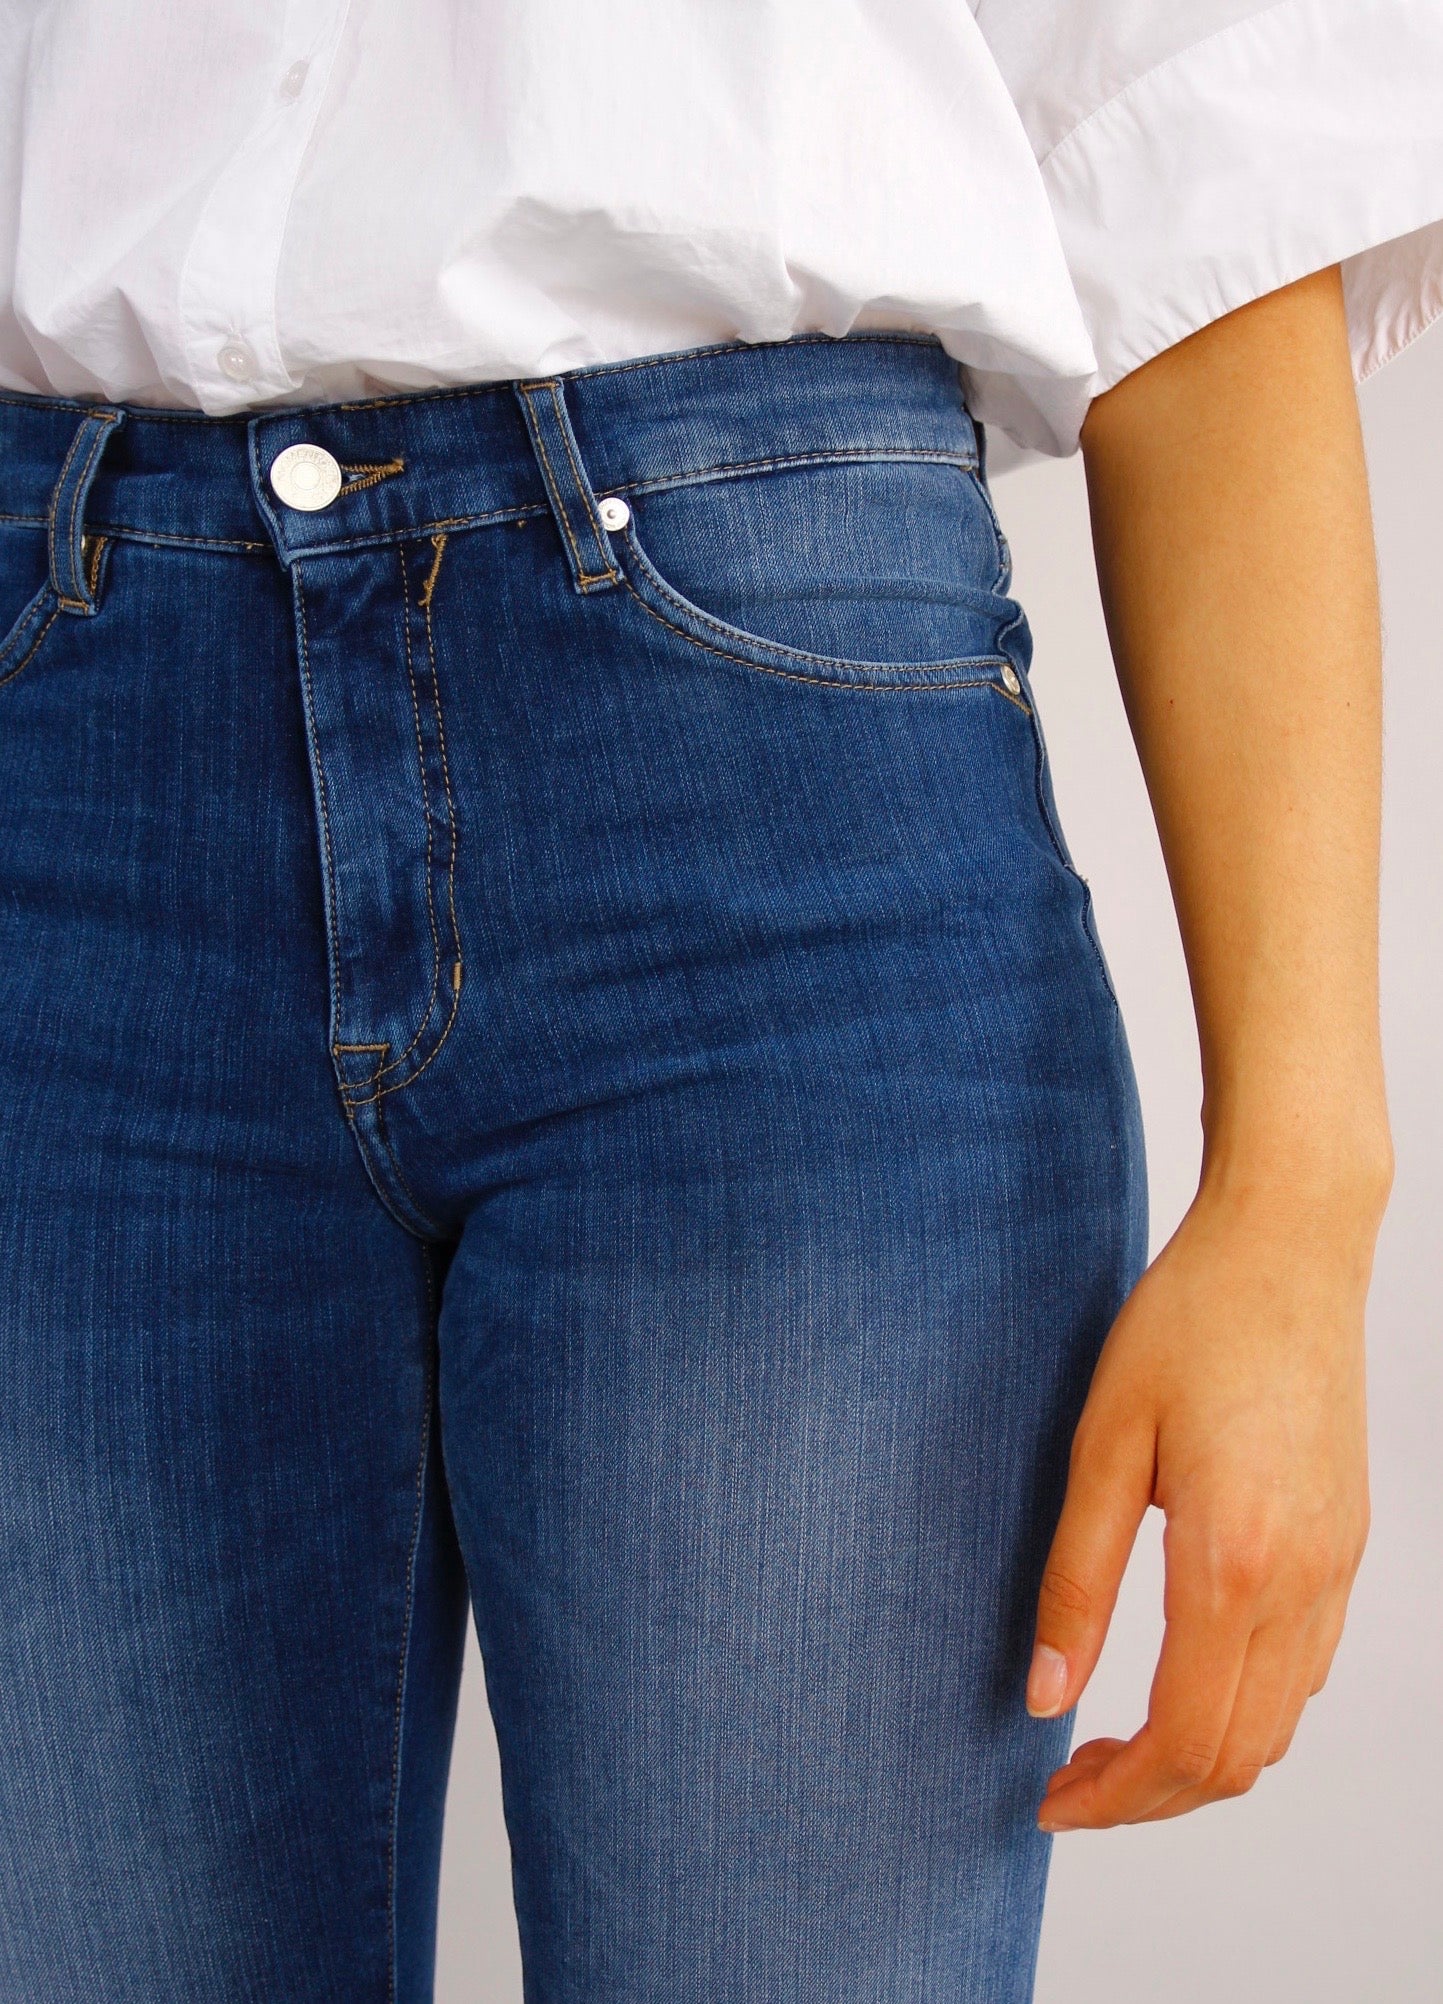 Azalea Ocean blue Jeans - Dame - Slim leg - High waist - Stretchy